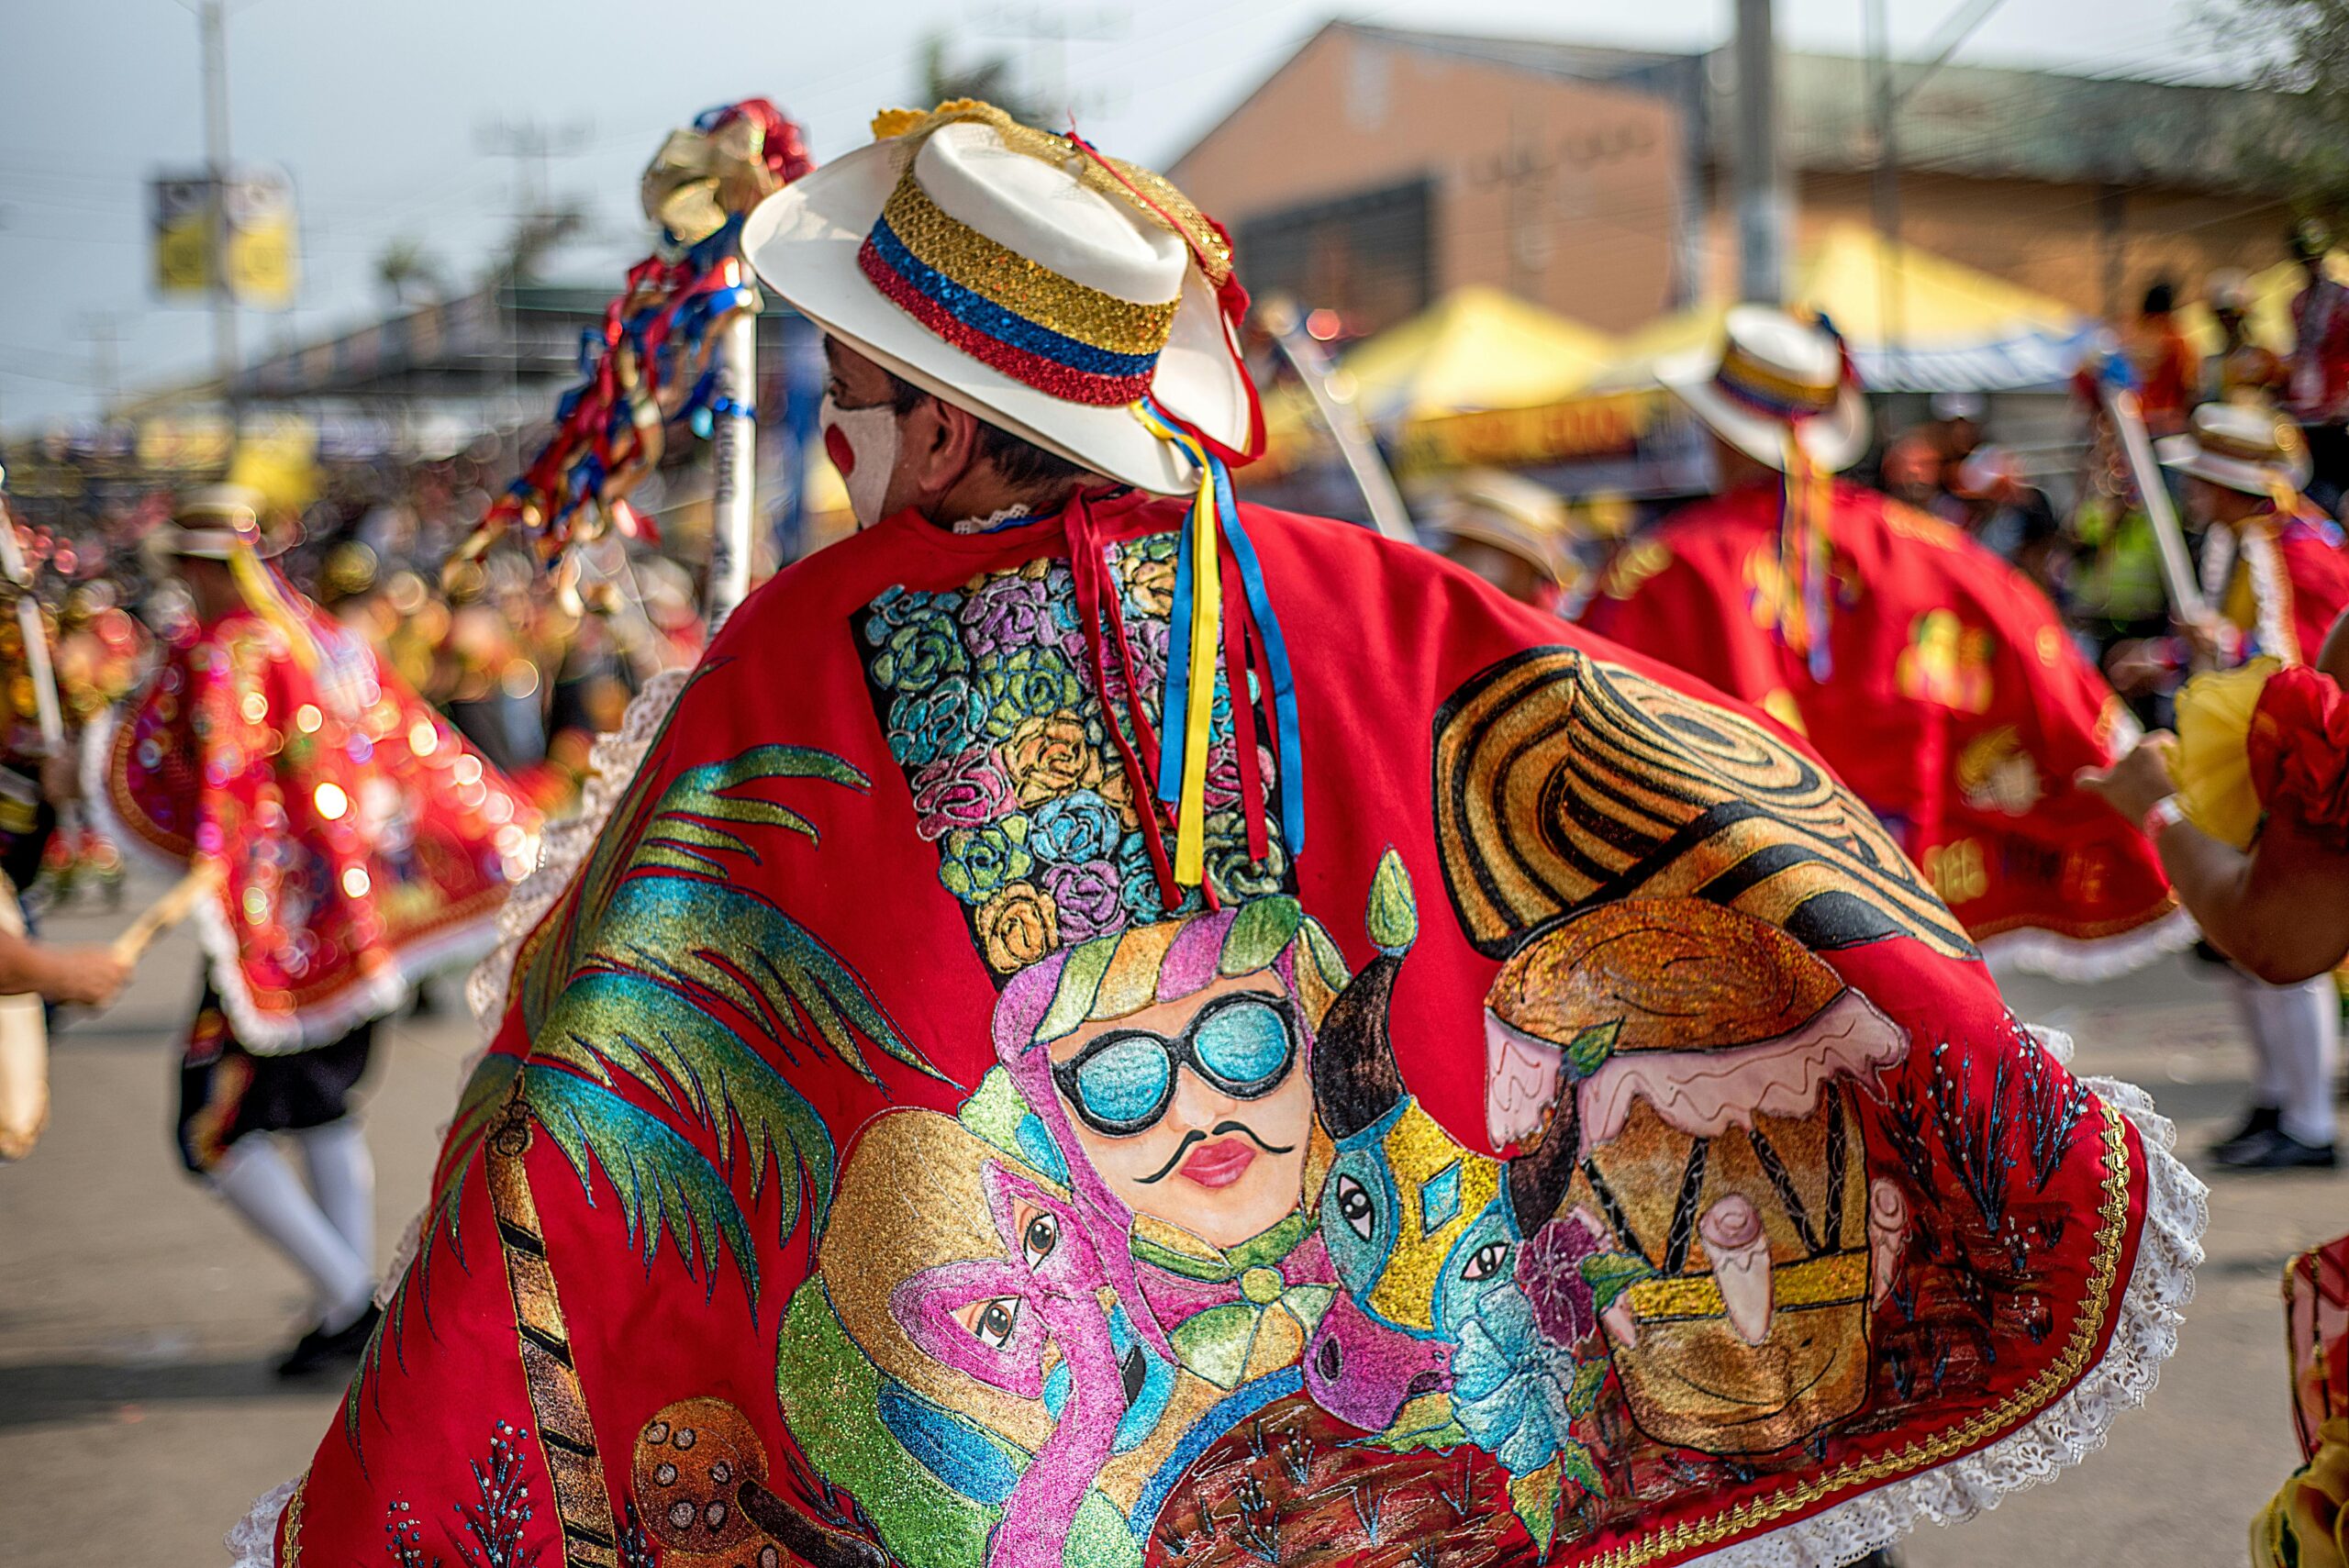 ¡Vive la cultura y las fiestas en Colombia! No te pierdas estos eventos en Cundinamarca y aprovecha para decirle sí a tu vivienda propia